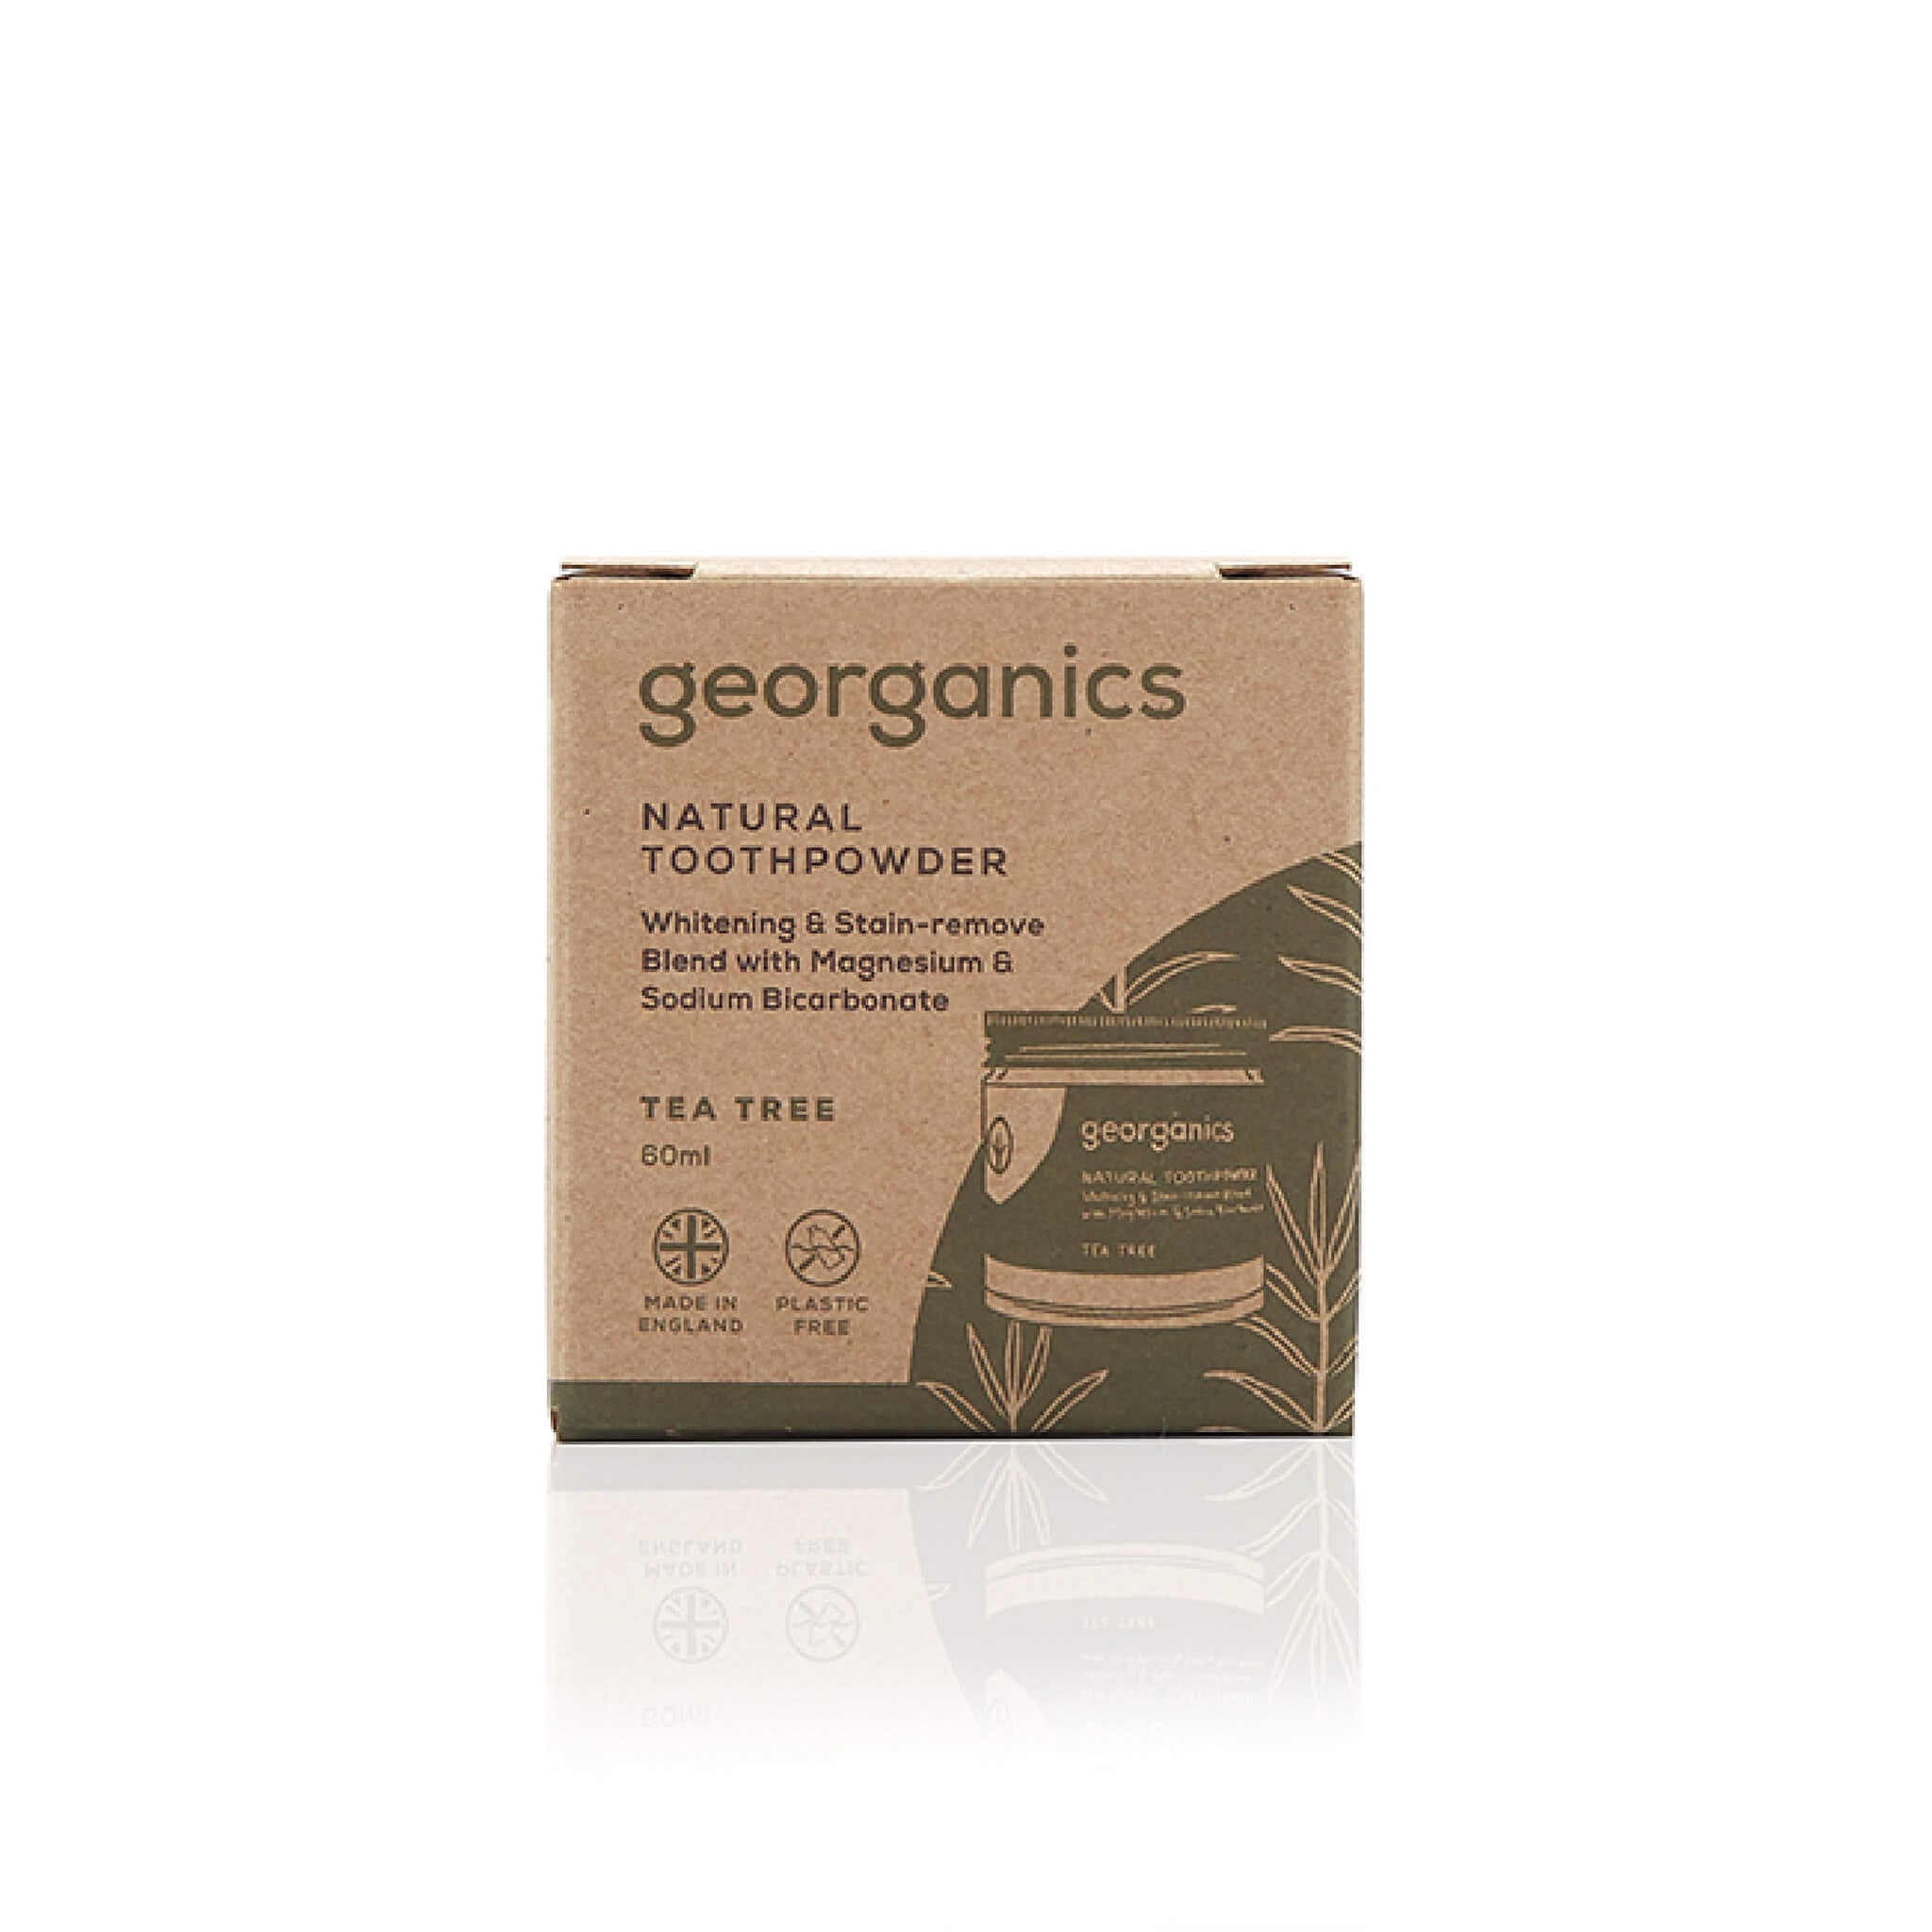 georganics jar of whitening tooth powder flavor tea tree packaging